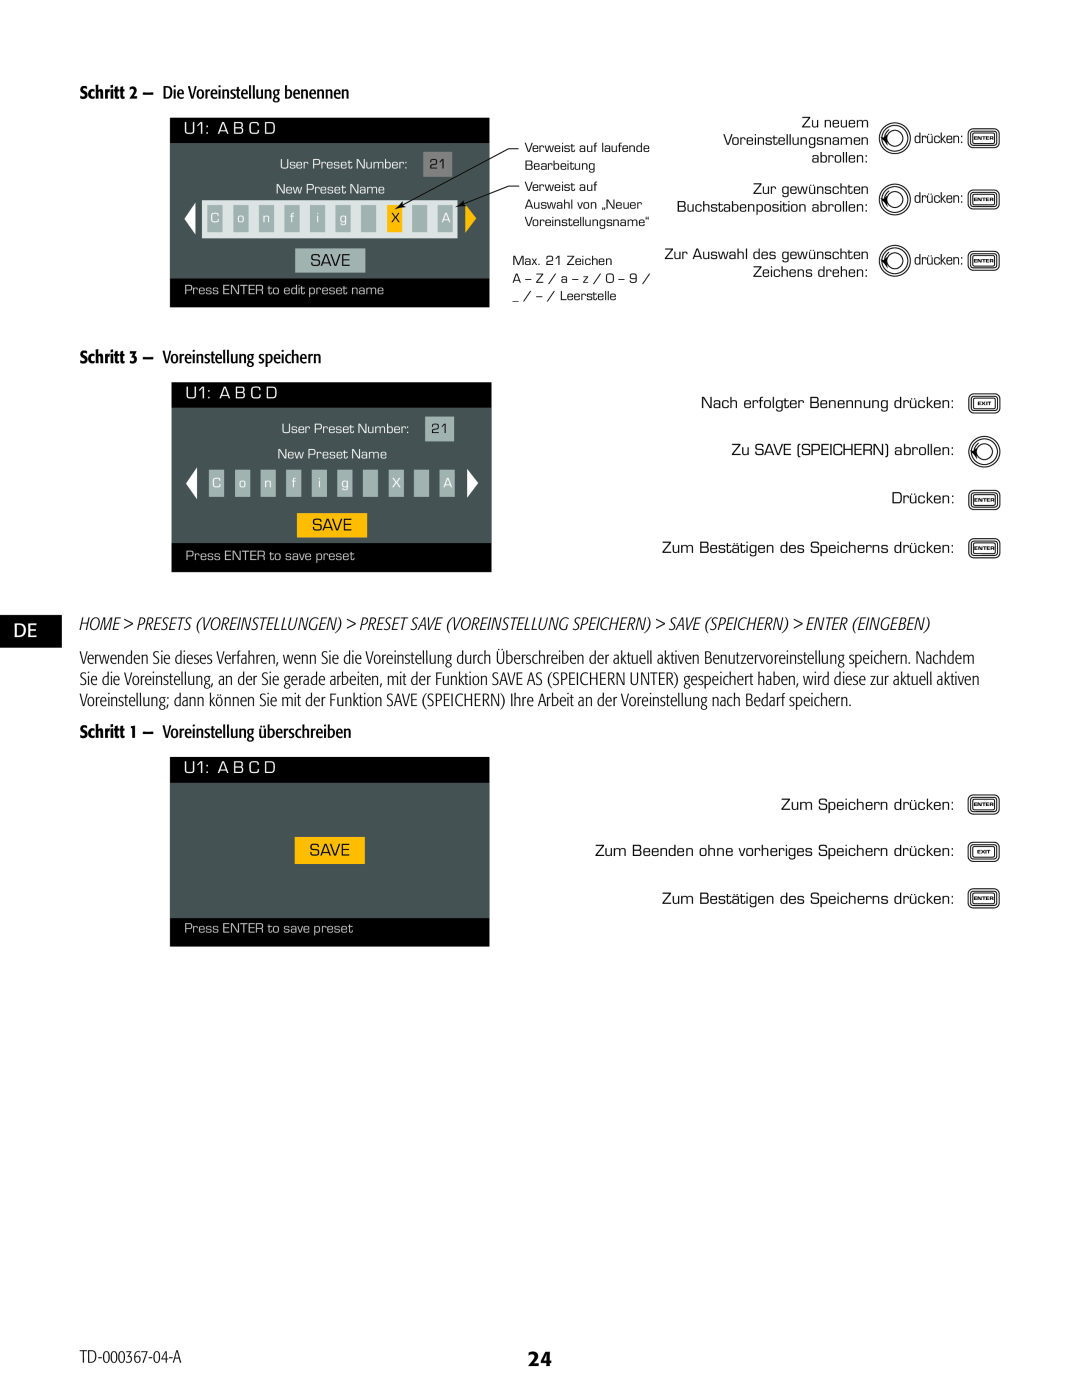 QSC Audio CXD4.2, CXD4.5, CXD4.3 manual U1 A B C D, Schritt 1 - Voreinstellung überschreiben, Press ENTER to edit preset name 